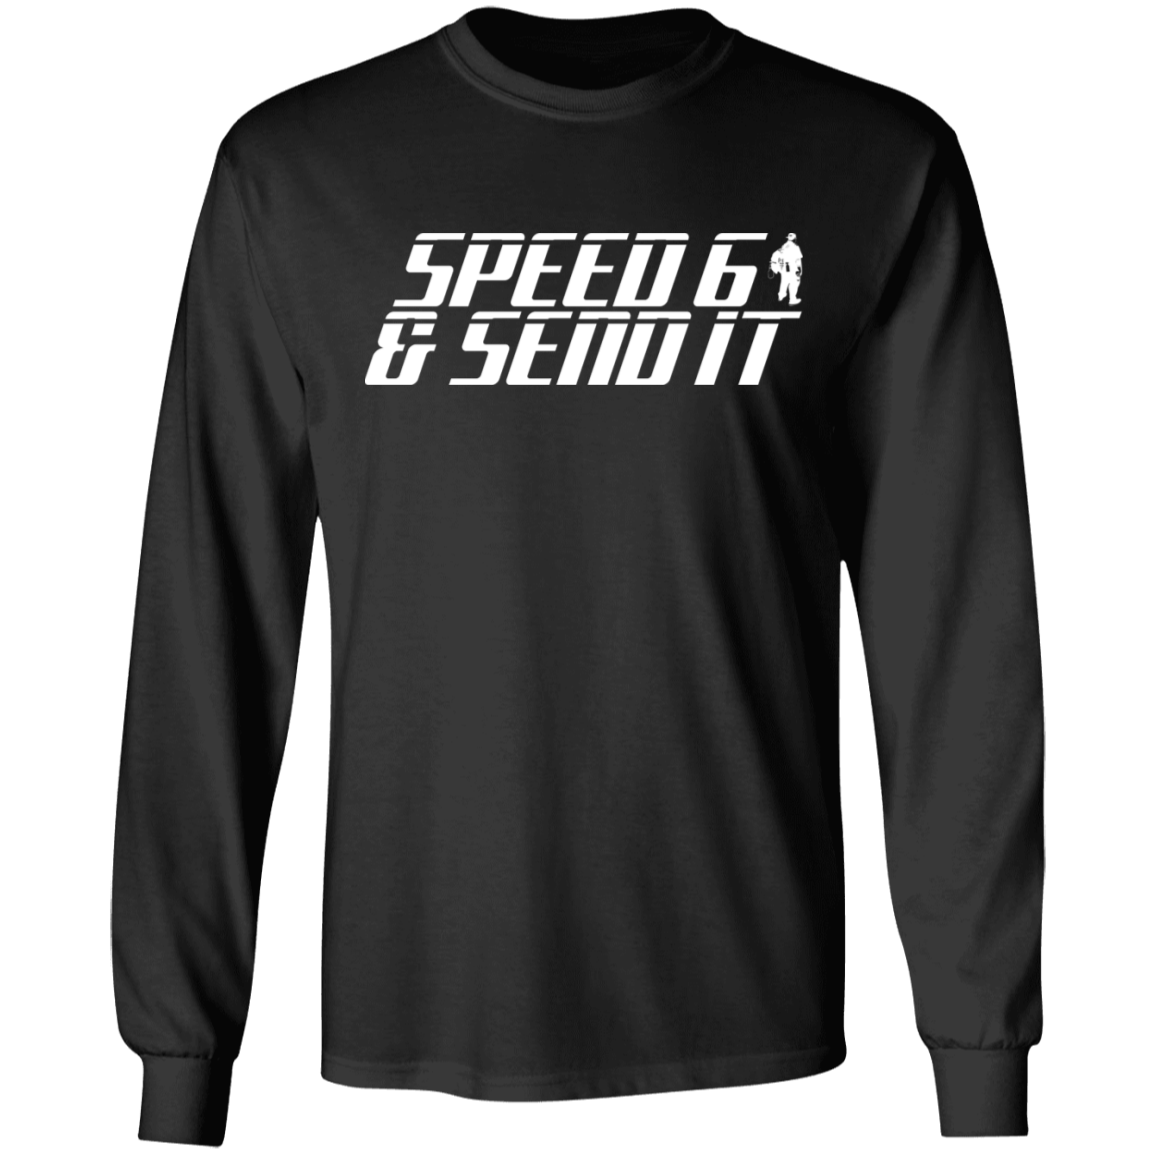 SPEED 6 G240 LS Ultra Cotton T-Shirt